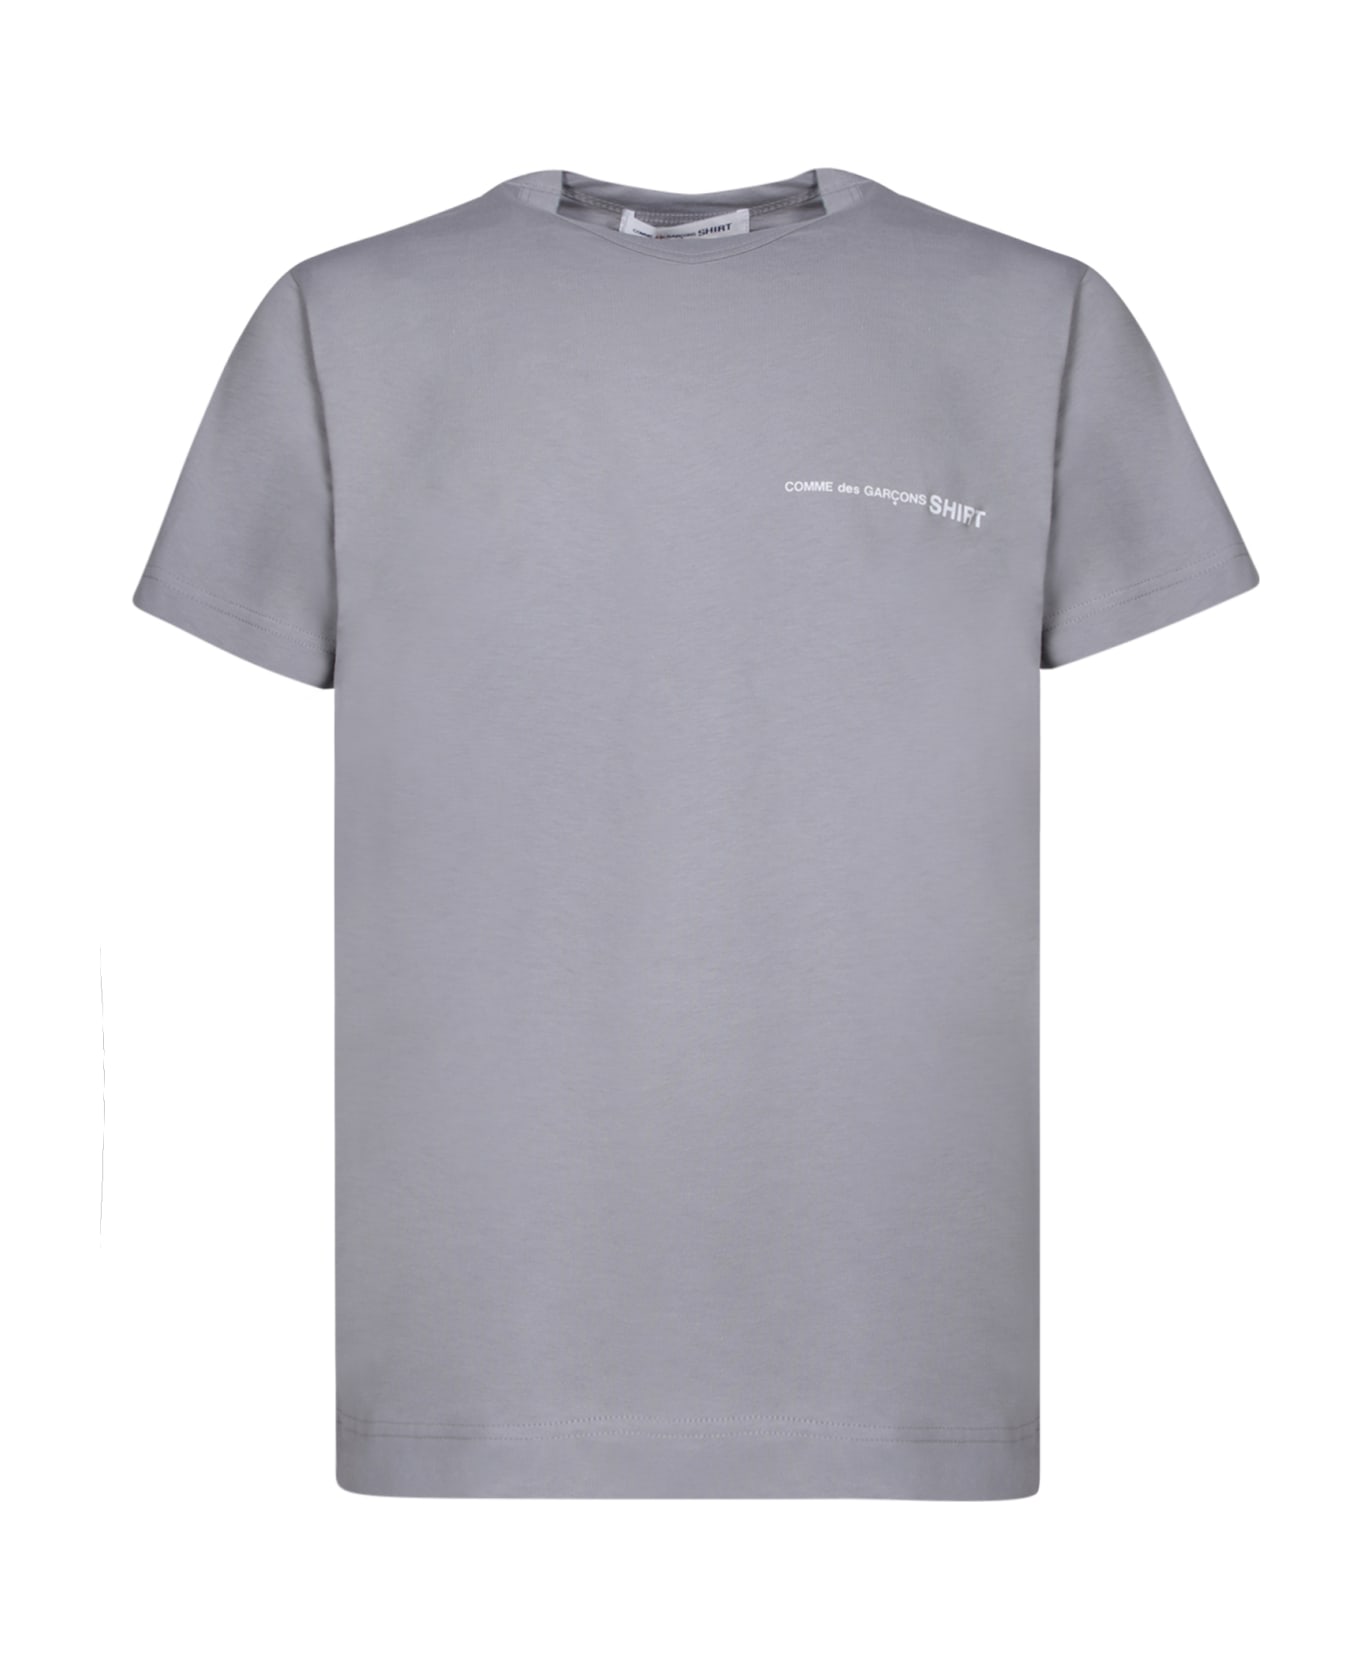 Comme des Garçons Shirt Regular Fit Grey T-shirt - Grey シャツ